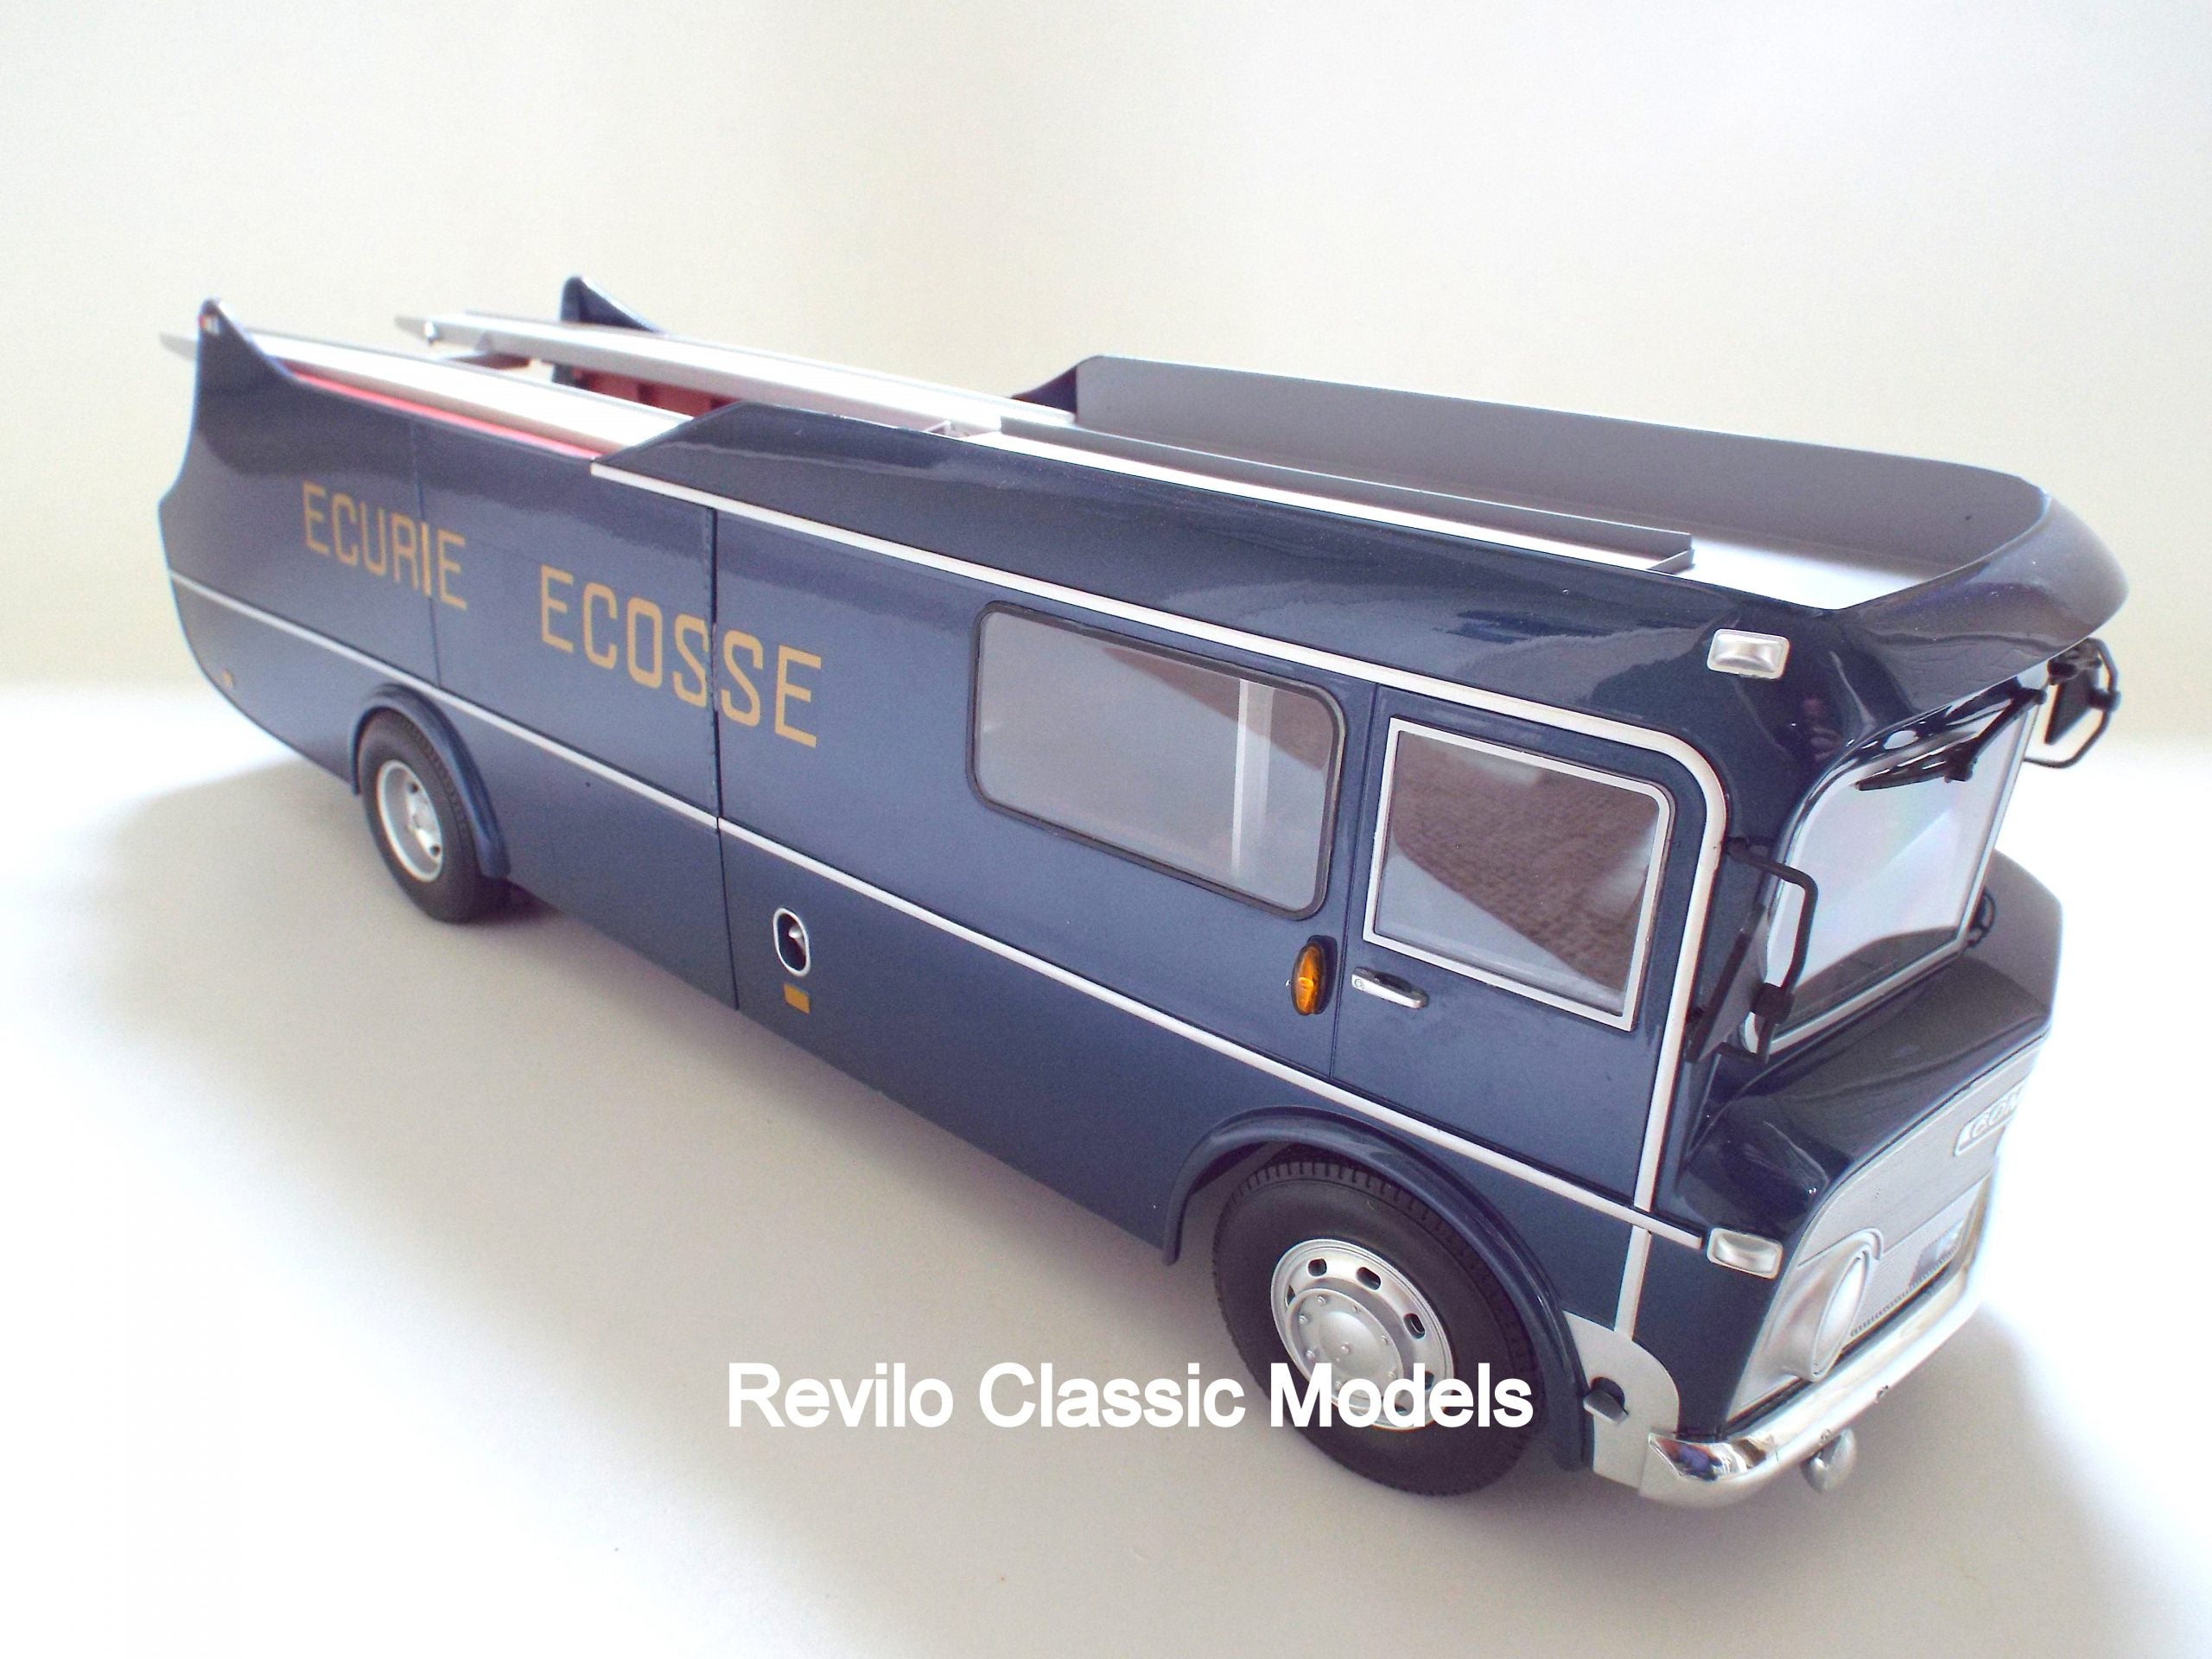 1959 Ecurie Ecosse Race Transporter escala 1:18